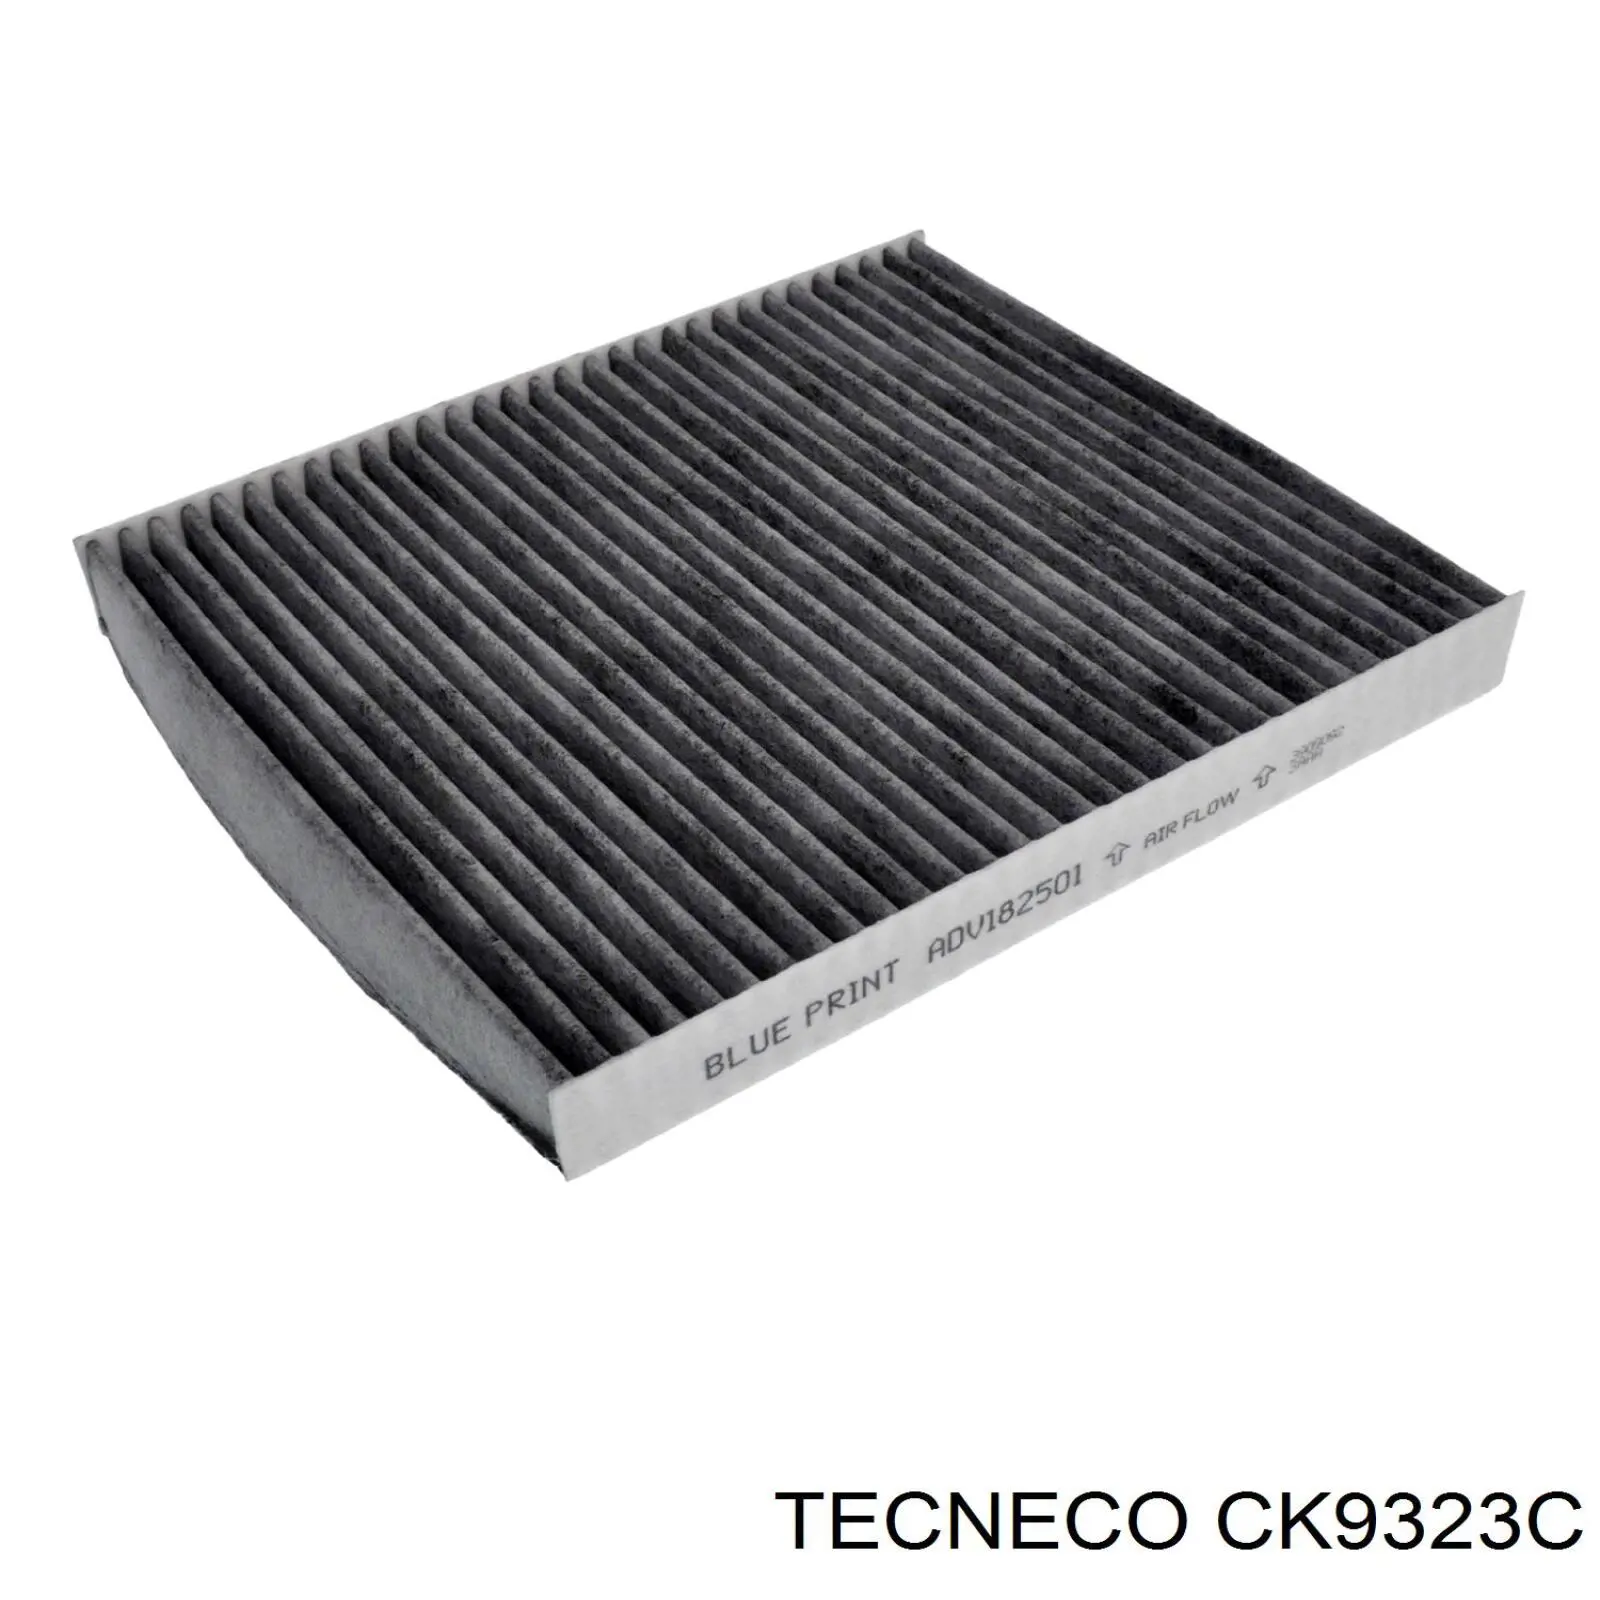 CK9323C Tecneco filtro habitáculo